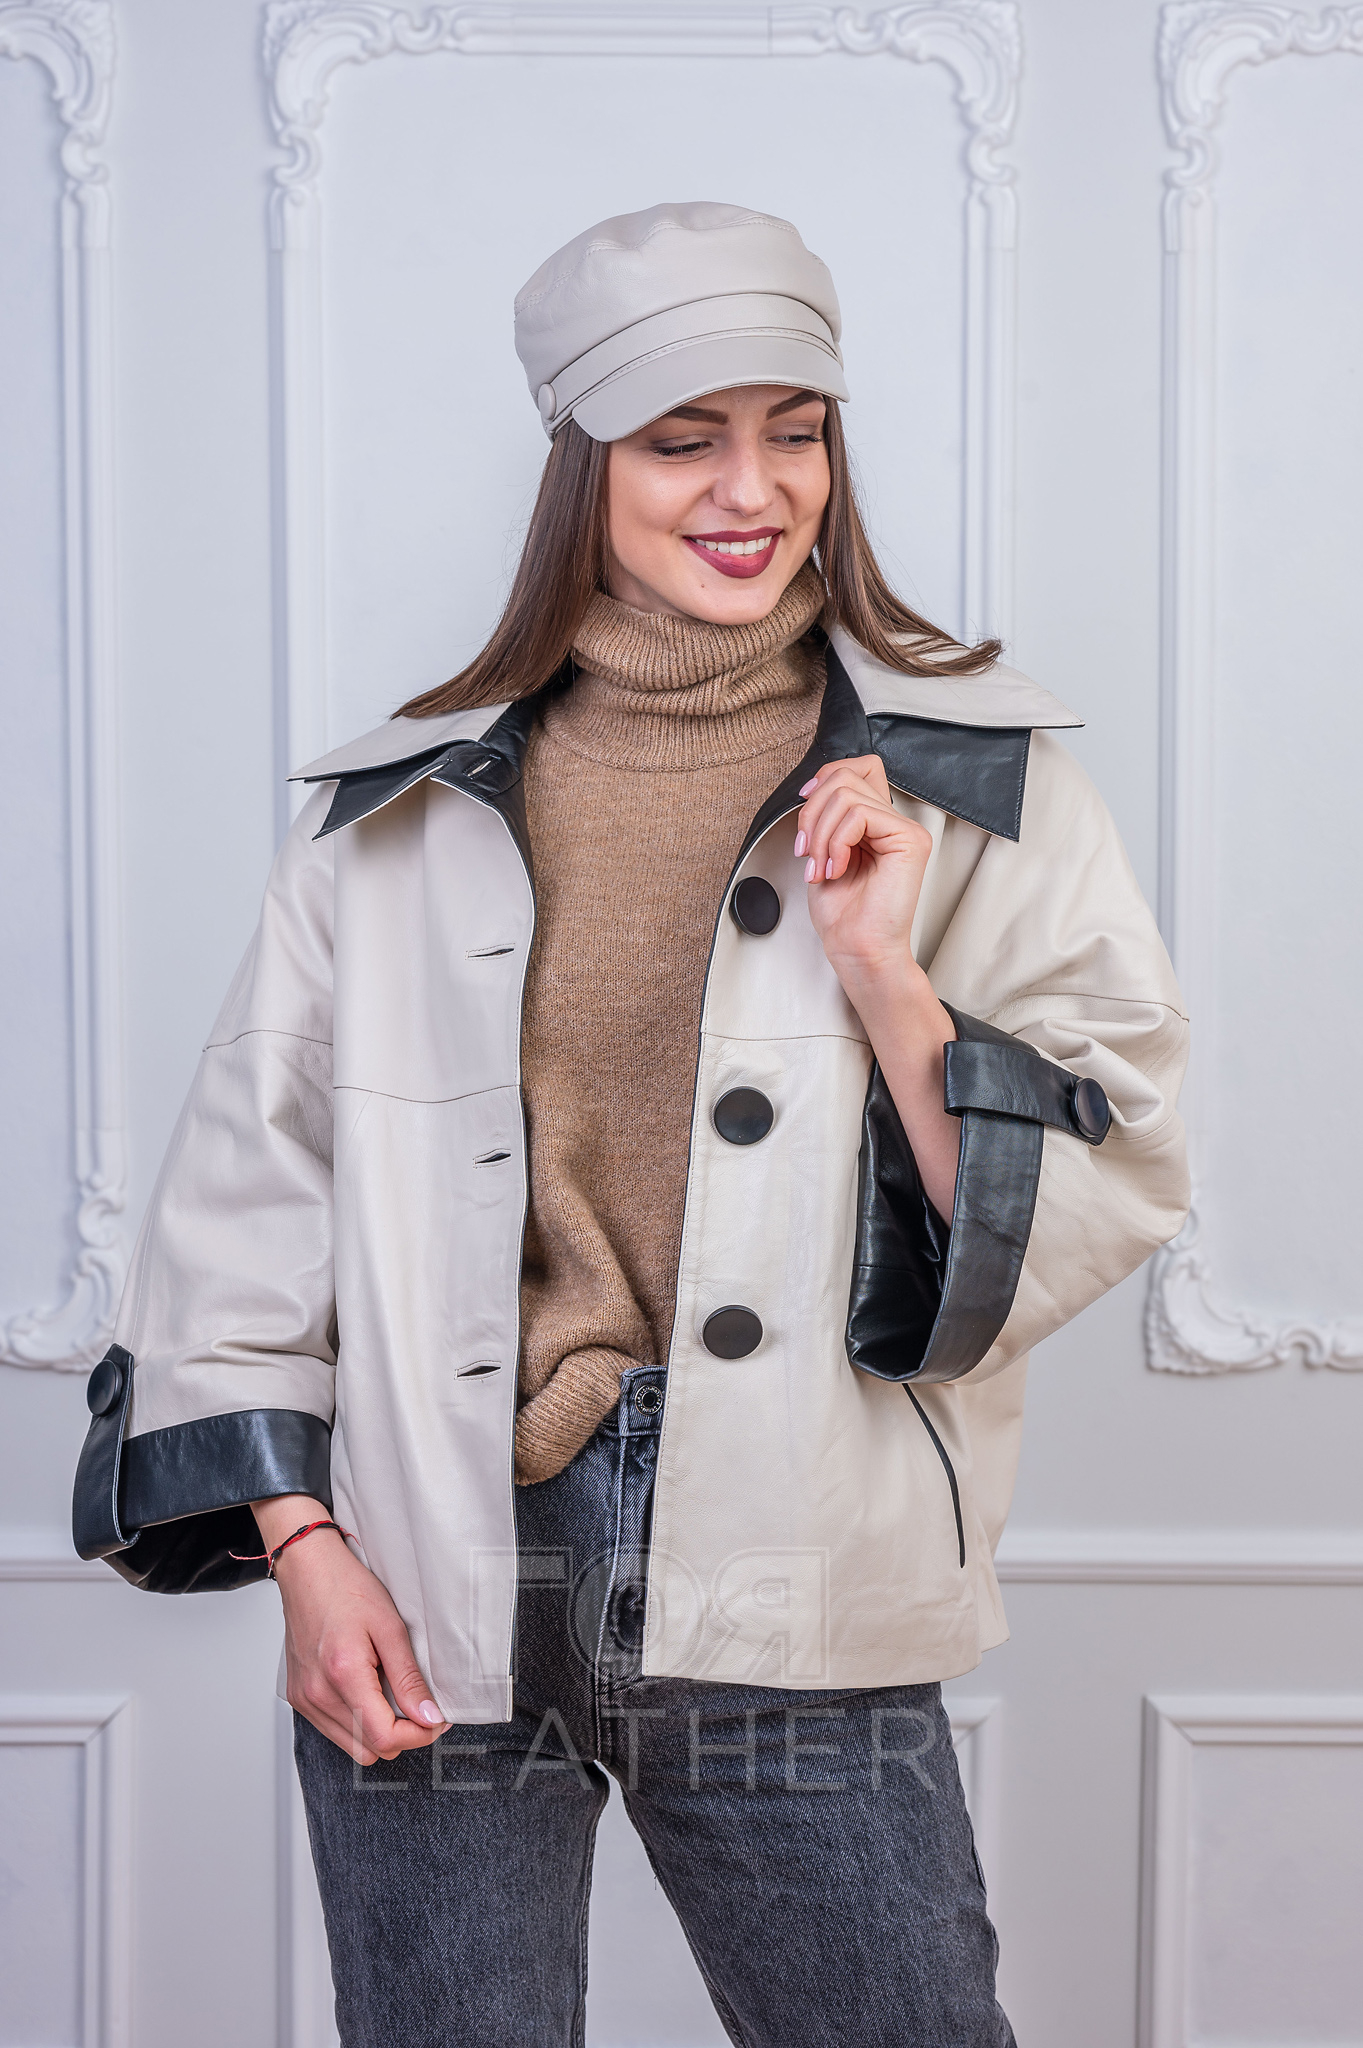 Дамско кожено сако Домино от ГОЯ Leather. Нов модел дамско яке изработен от качествена агнешка кожа. Кройката е свободна стил оверсайз, подходяща от слаба до макси размер фигура. Якето е с тънък хастар, подходящо за носене през сезон пролет-есен.